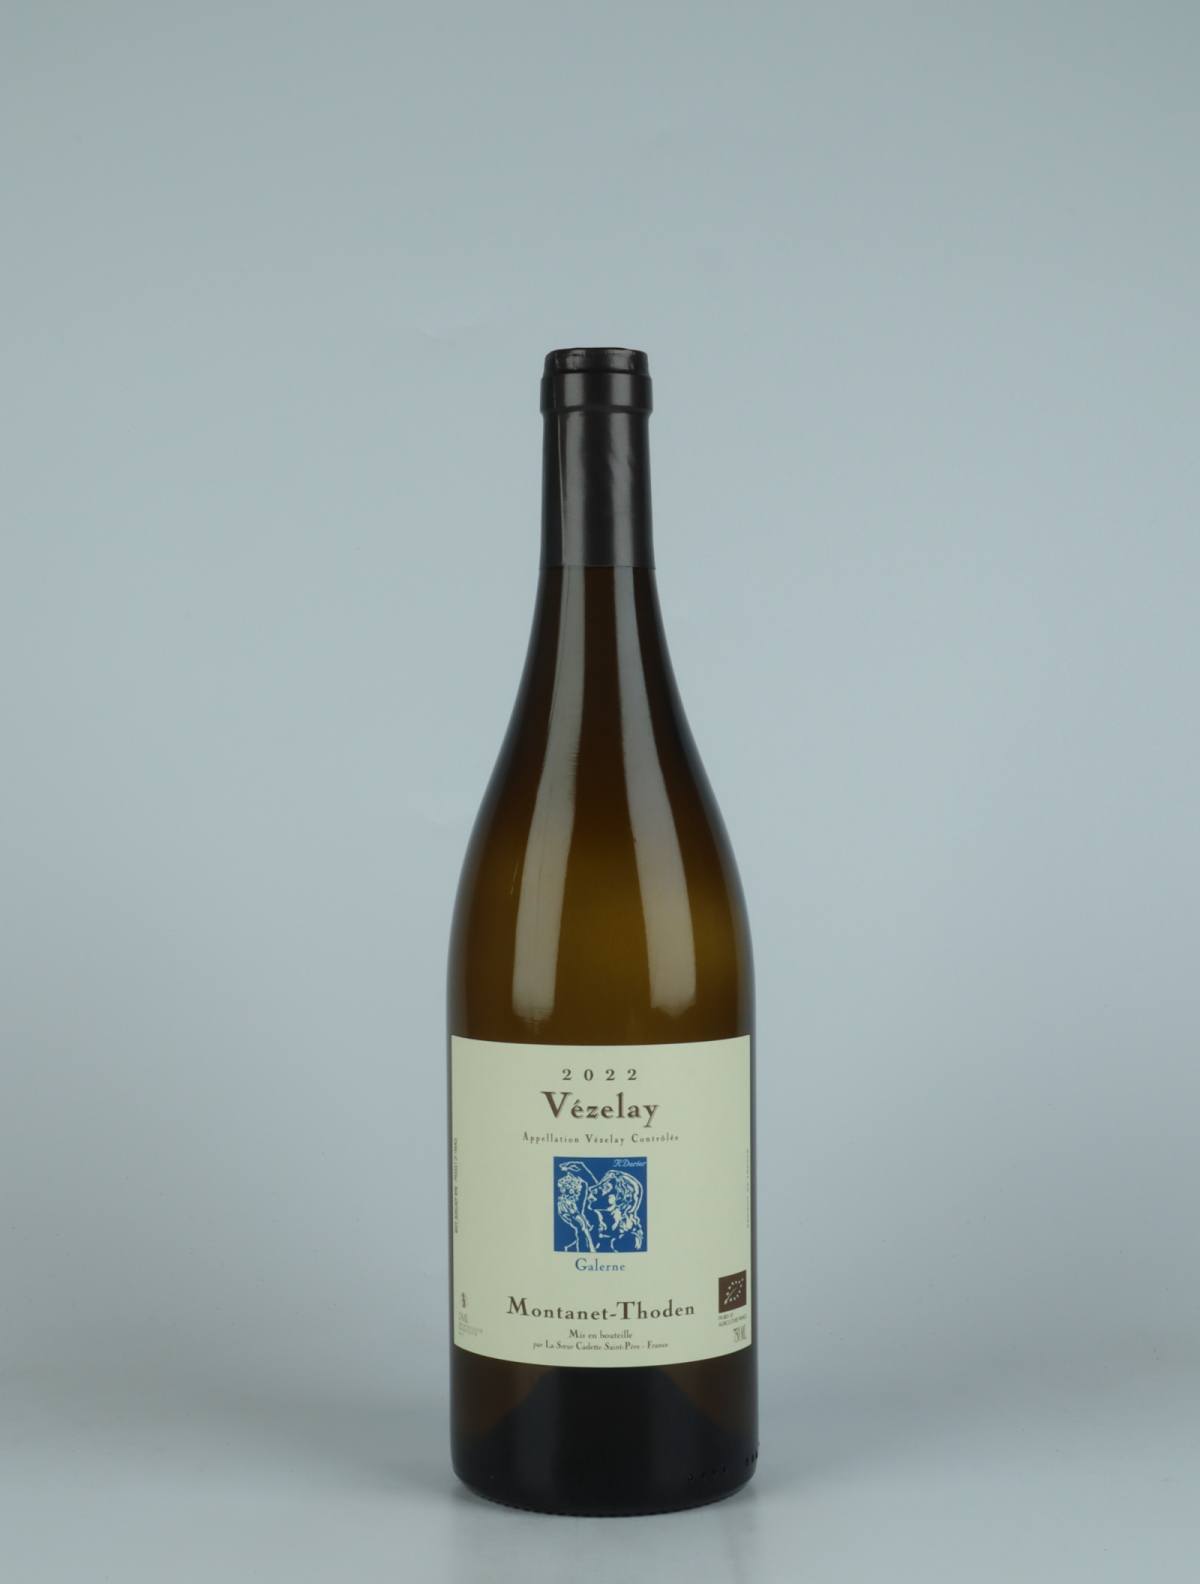 En flaske 2022 Bourgogne Vézelay - Galerne Hvidvin fra Domaine Montanet-Thoden, Bourgogne i Frankrig